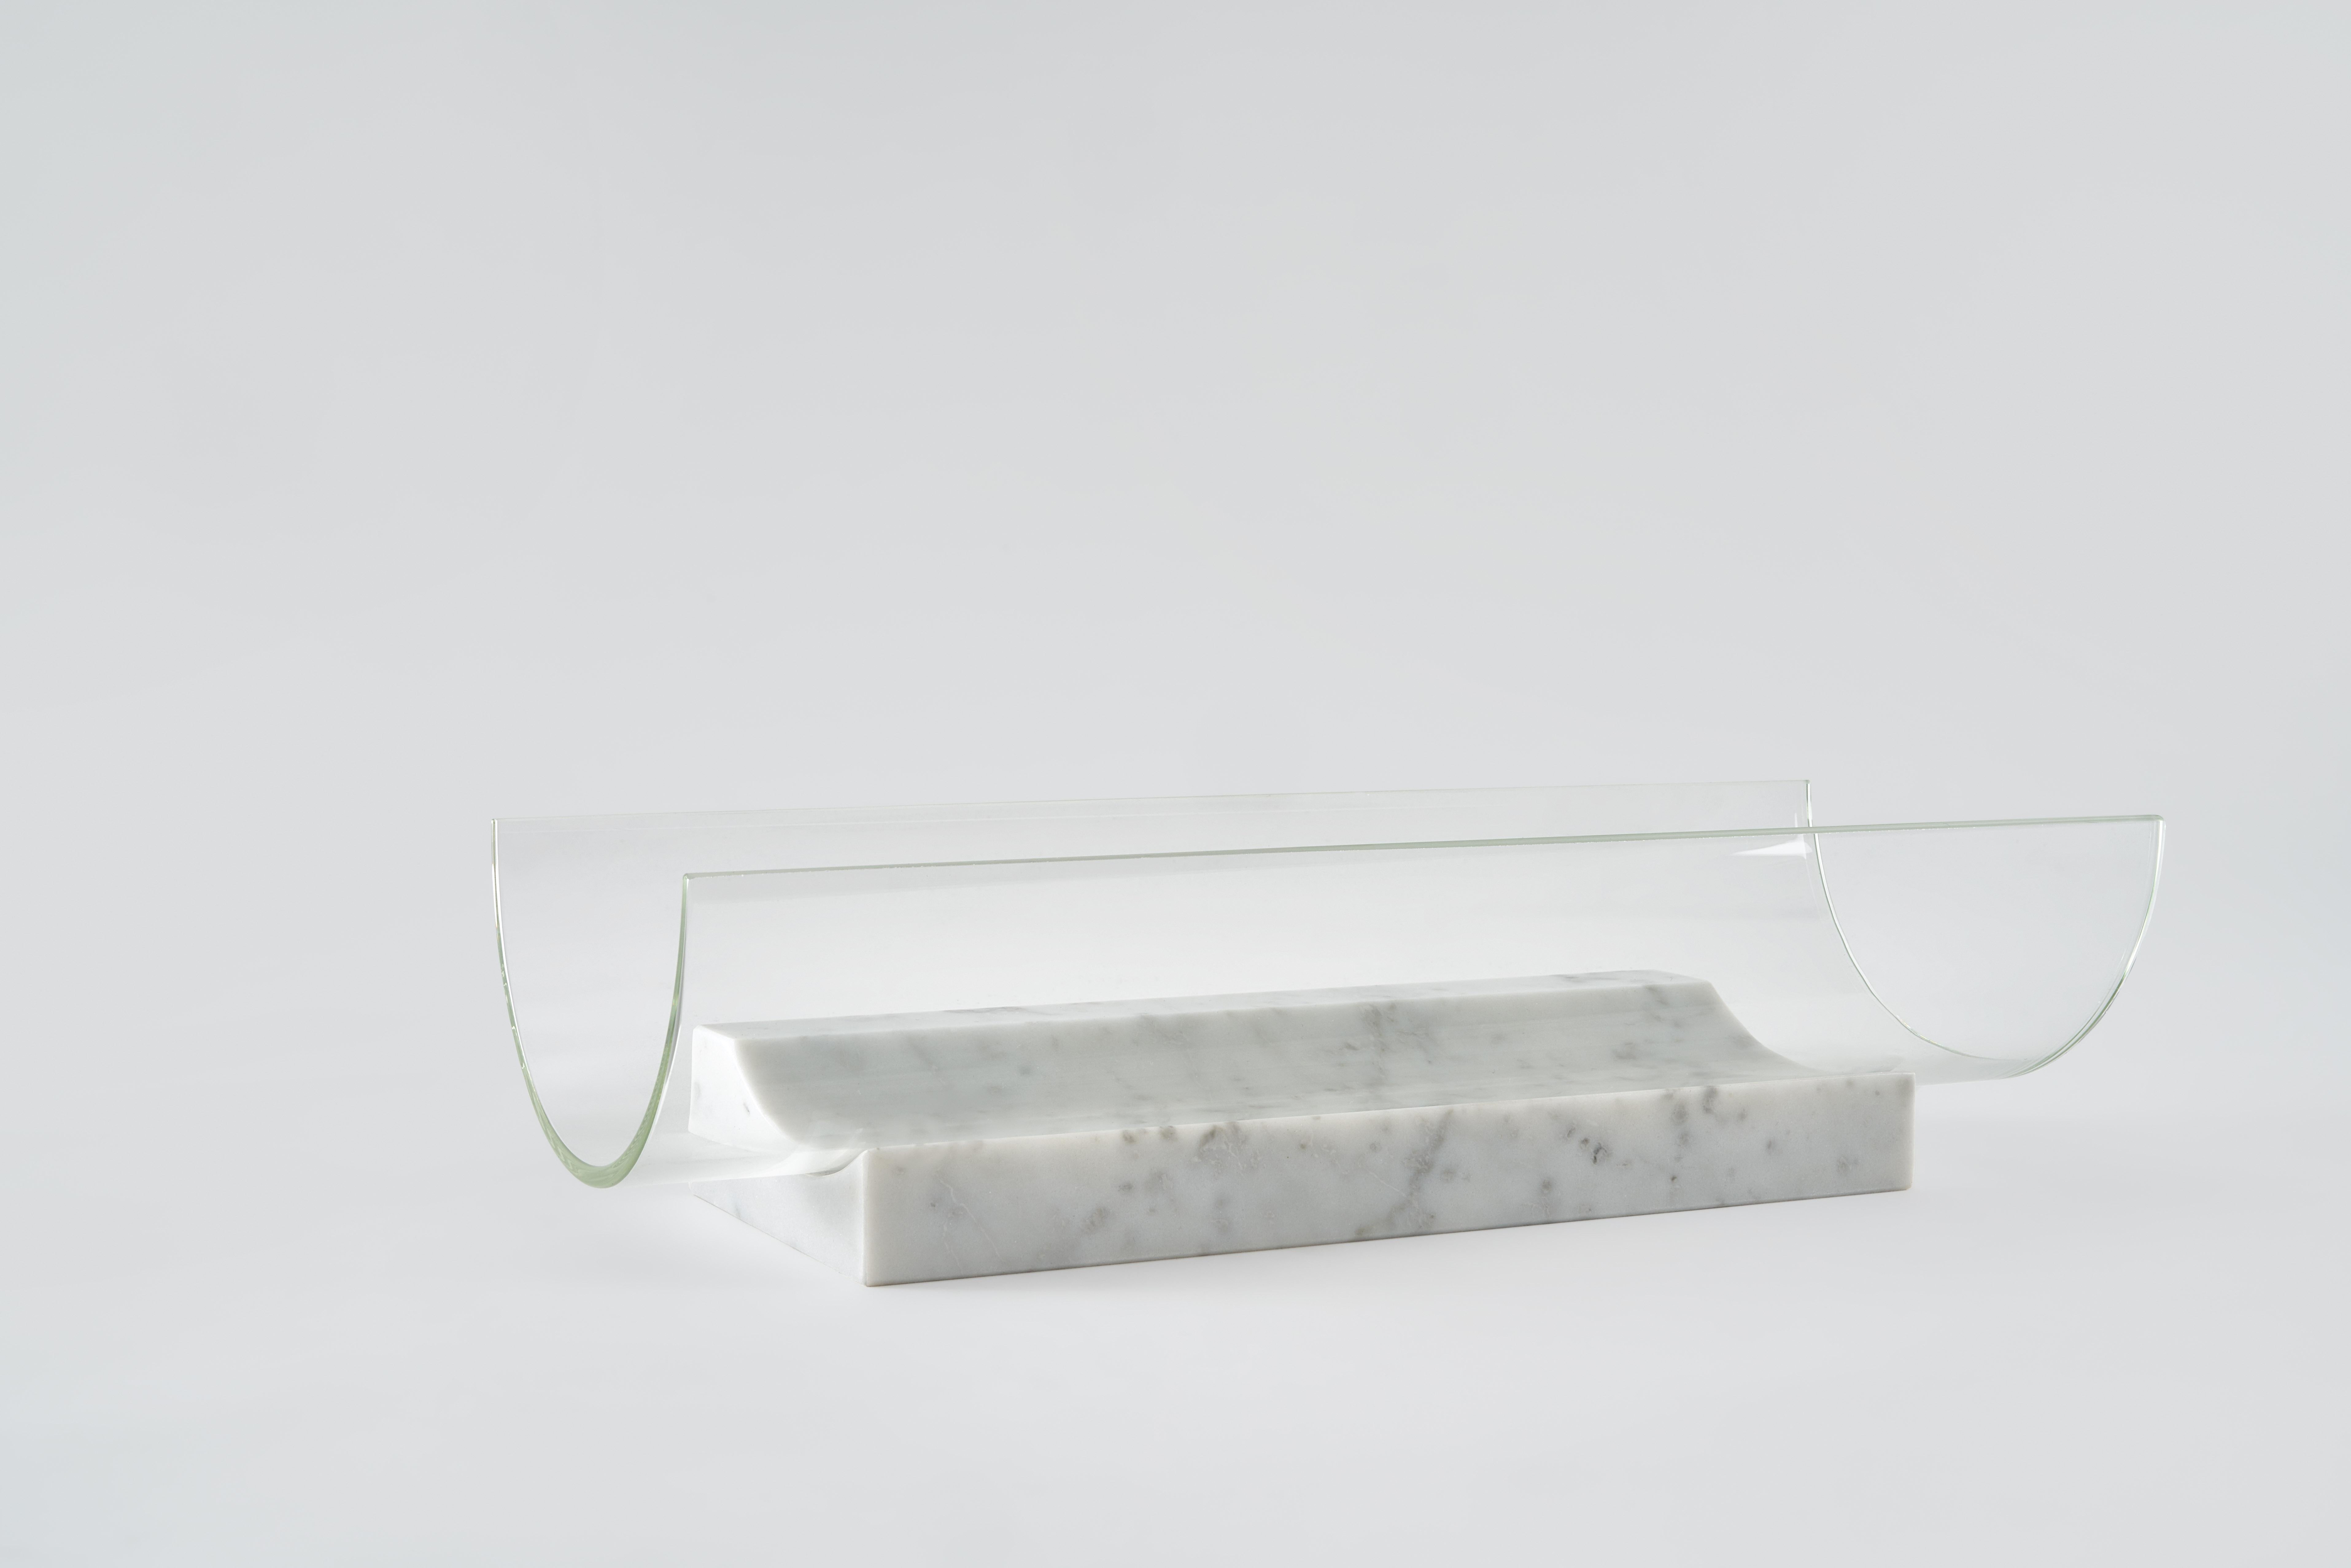 Bol Segno long - Giorgio Bonaguro
Dimensions : D 38 x L 15 x H 11 cm
Matériaux : marbre blanc de carrare, verre.

Une collection née du désir de récupérer les déchets de traitement du marbre : de petites portions de dalles de différentes épaisseurs,